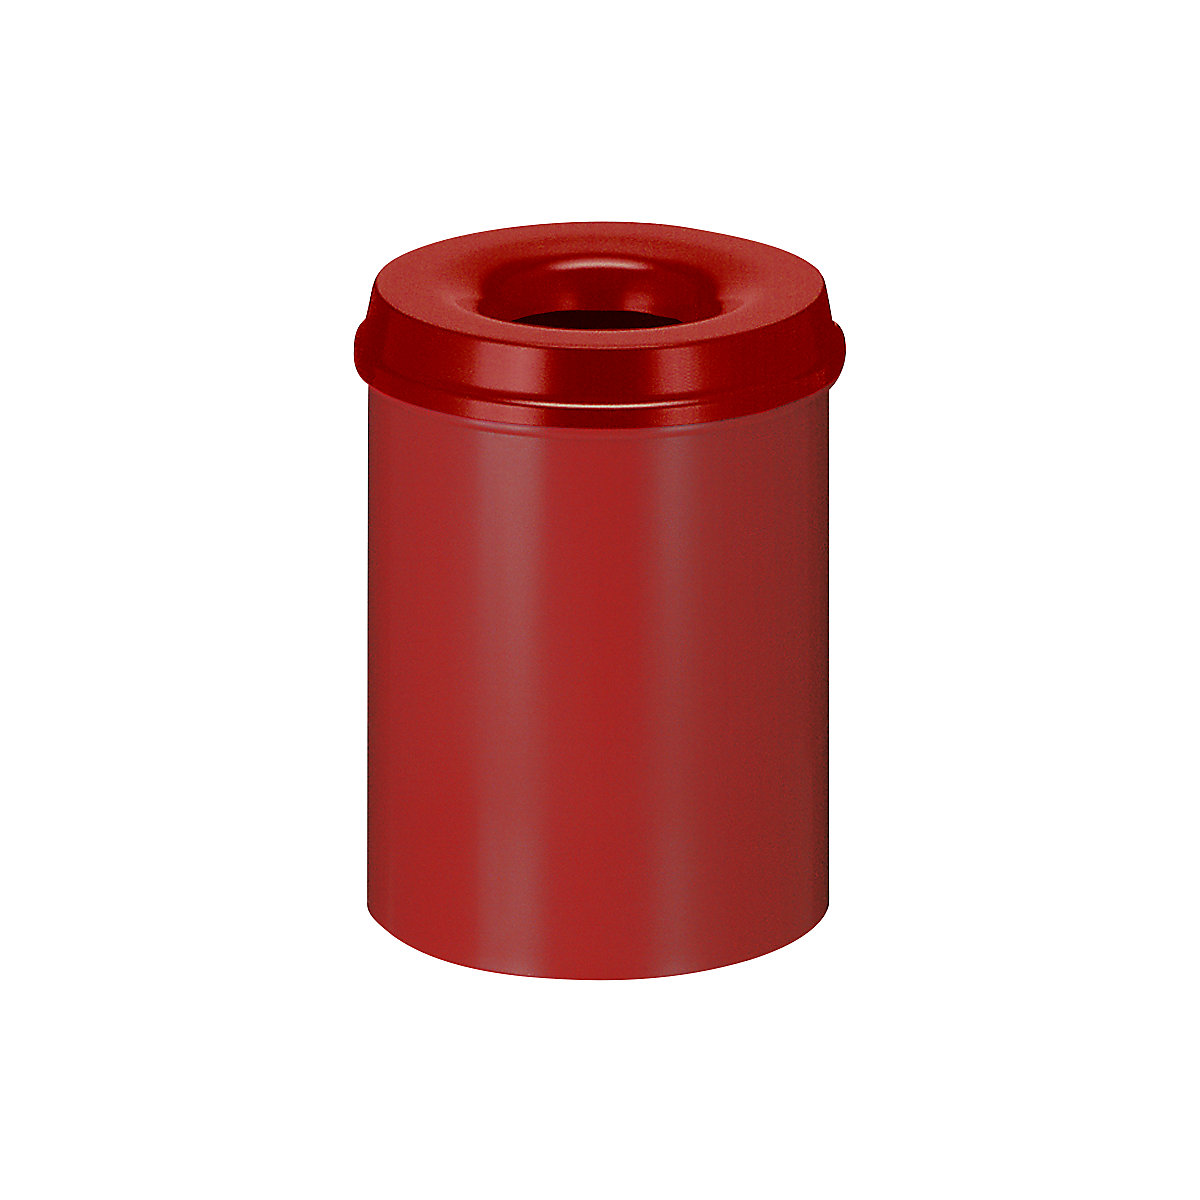 Önoltó papírkosár, űrtartalom 15 l, ma x Ø 360 x 255 mm, ház piros / oltófedél piros színben